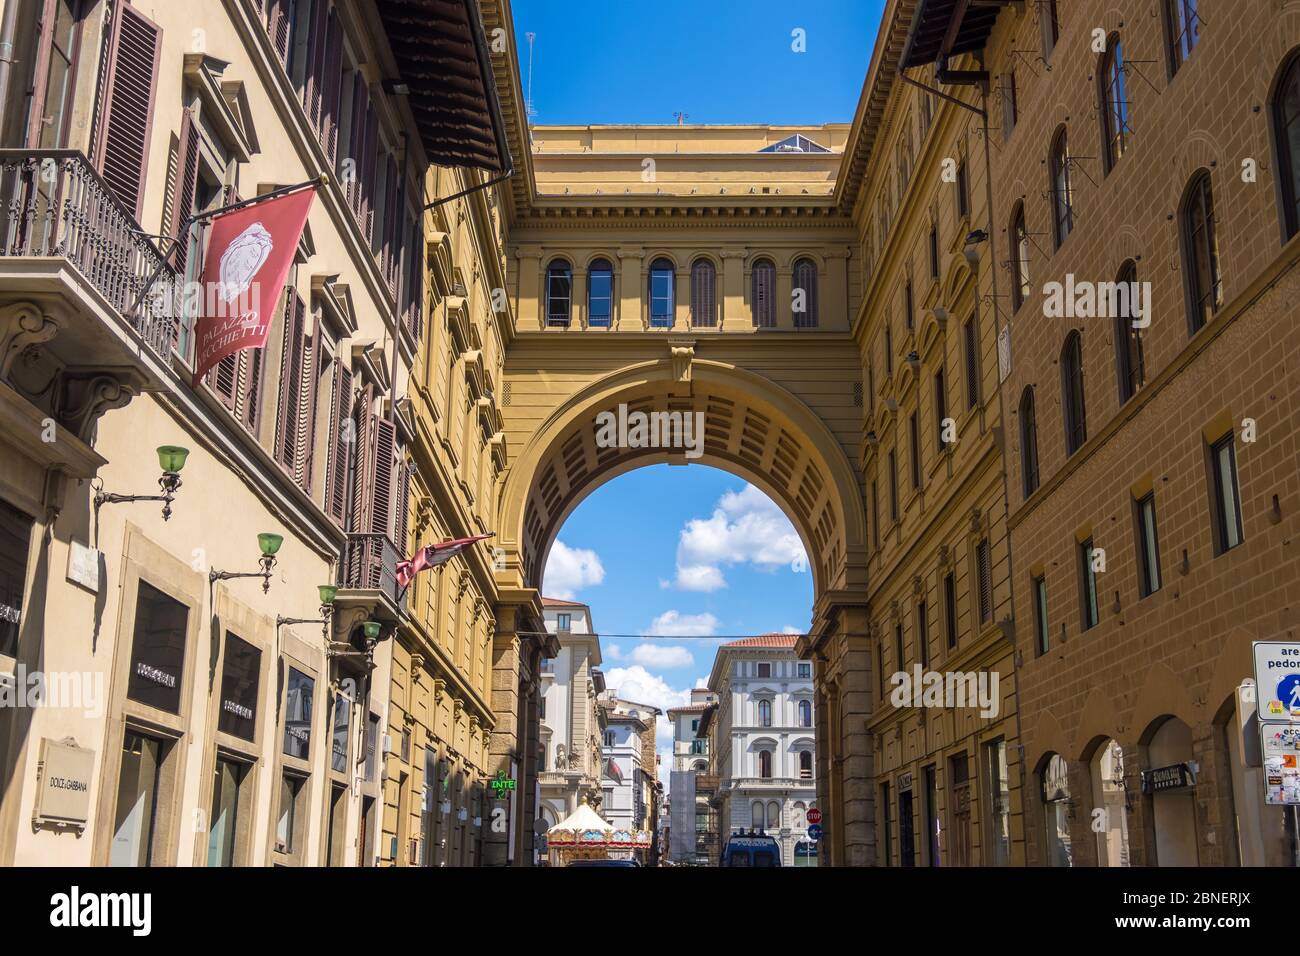 Florencia, Italia - 16 de agosto de 2019: Vista de la calle en el centro histórico de Florencia, Toscana, Italia Foto de stock